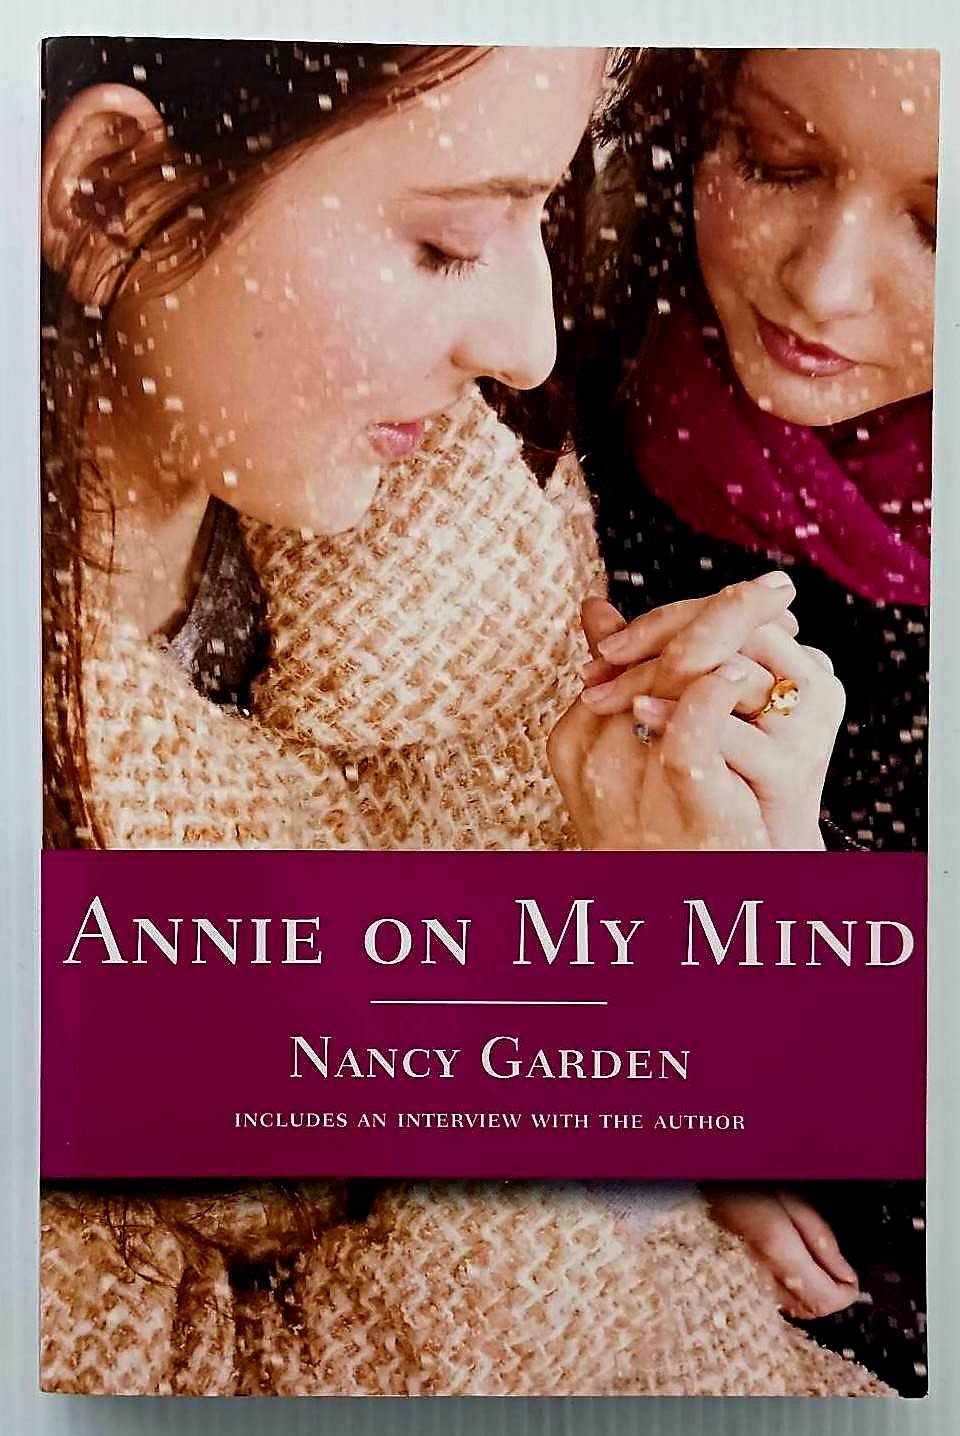 ANNIE ON MY MIND - Nancy Garden